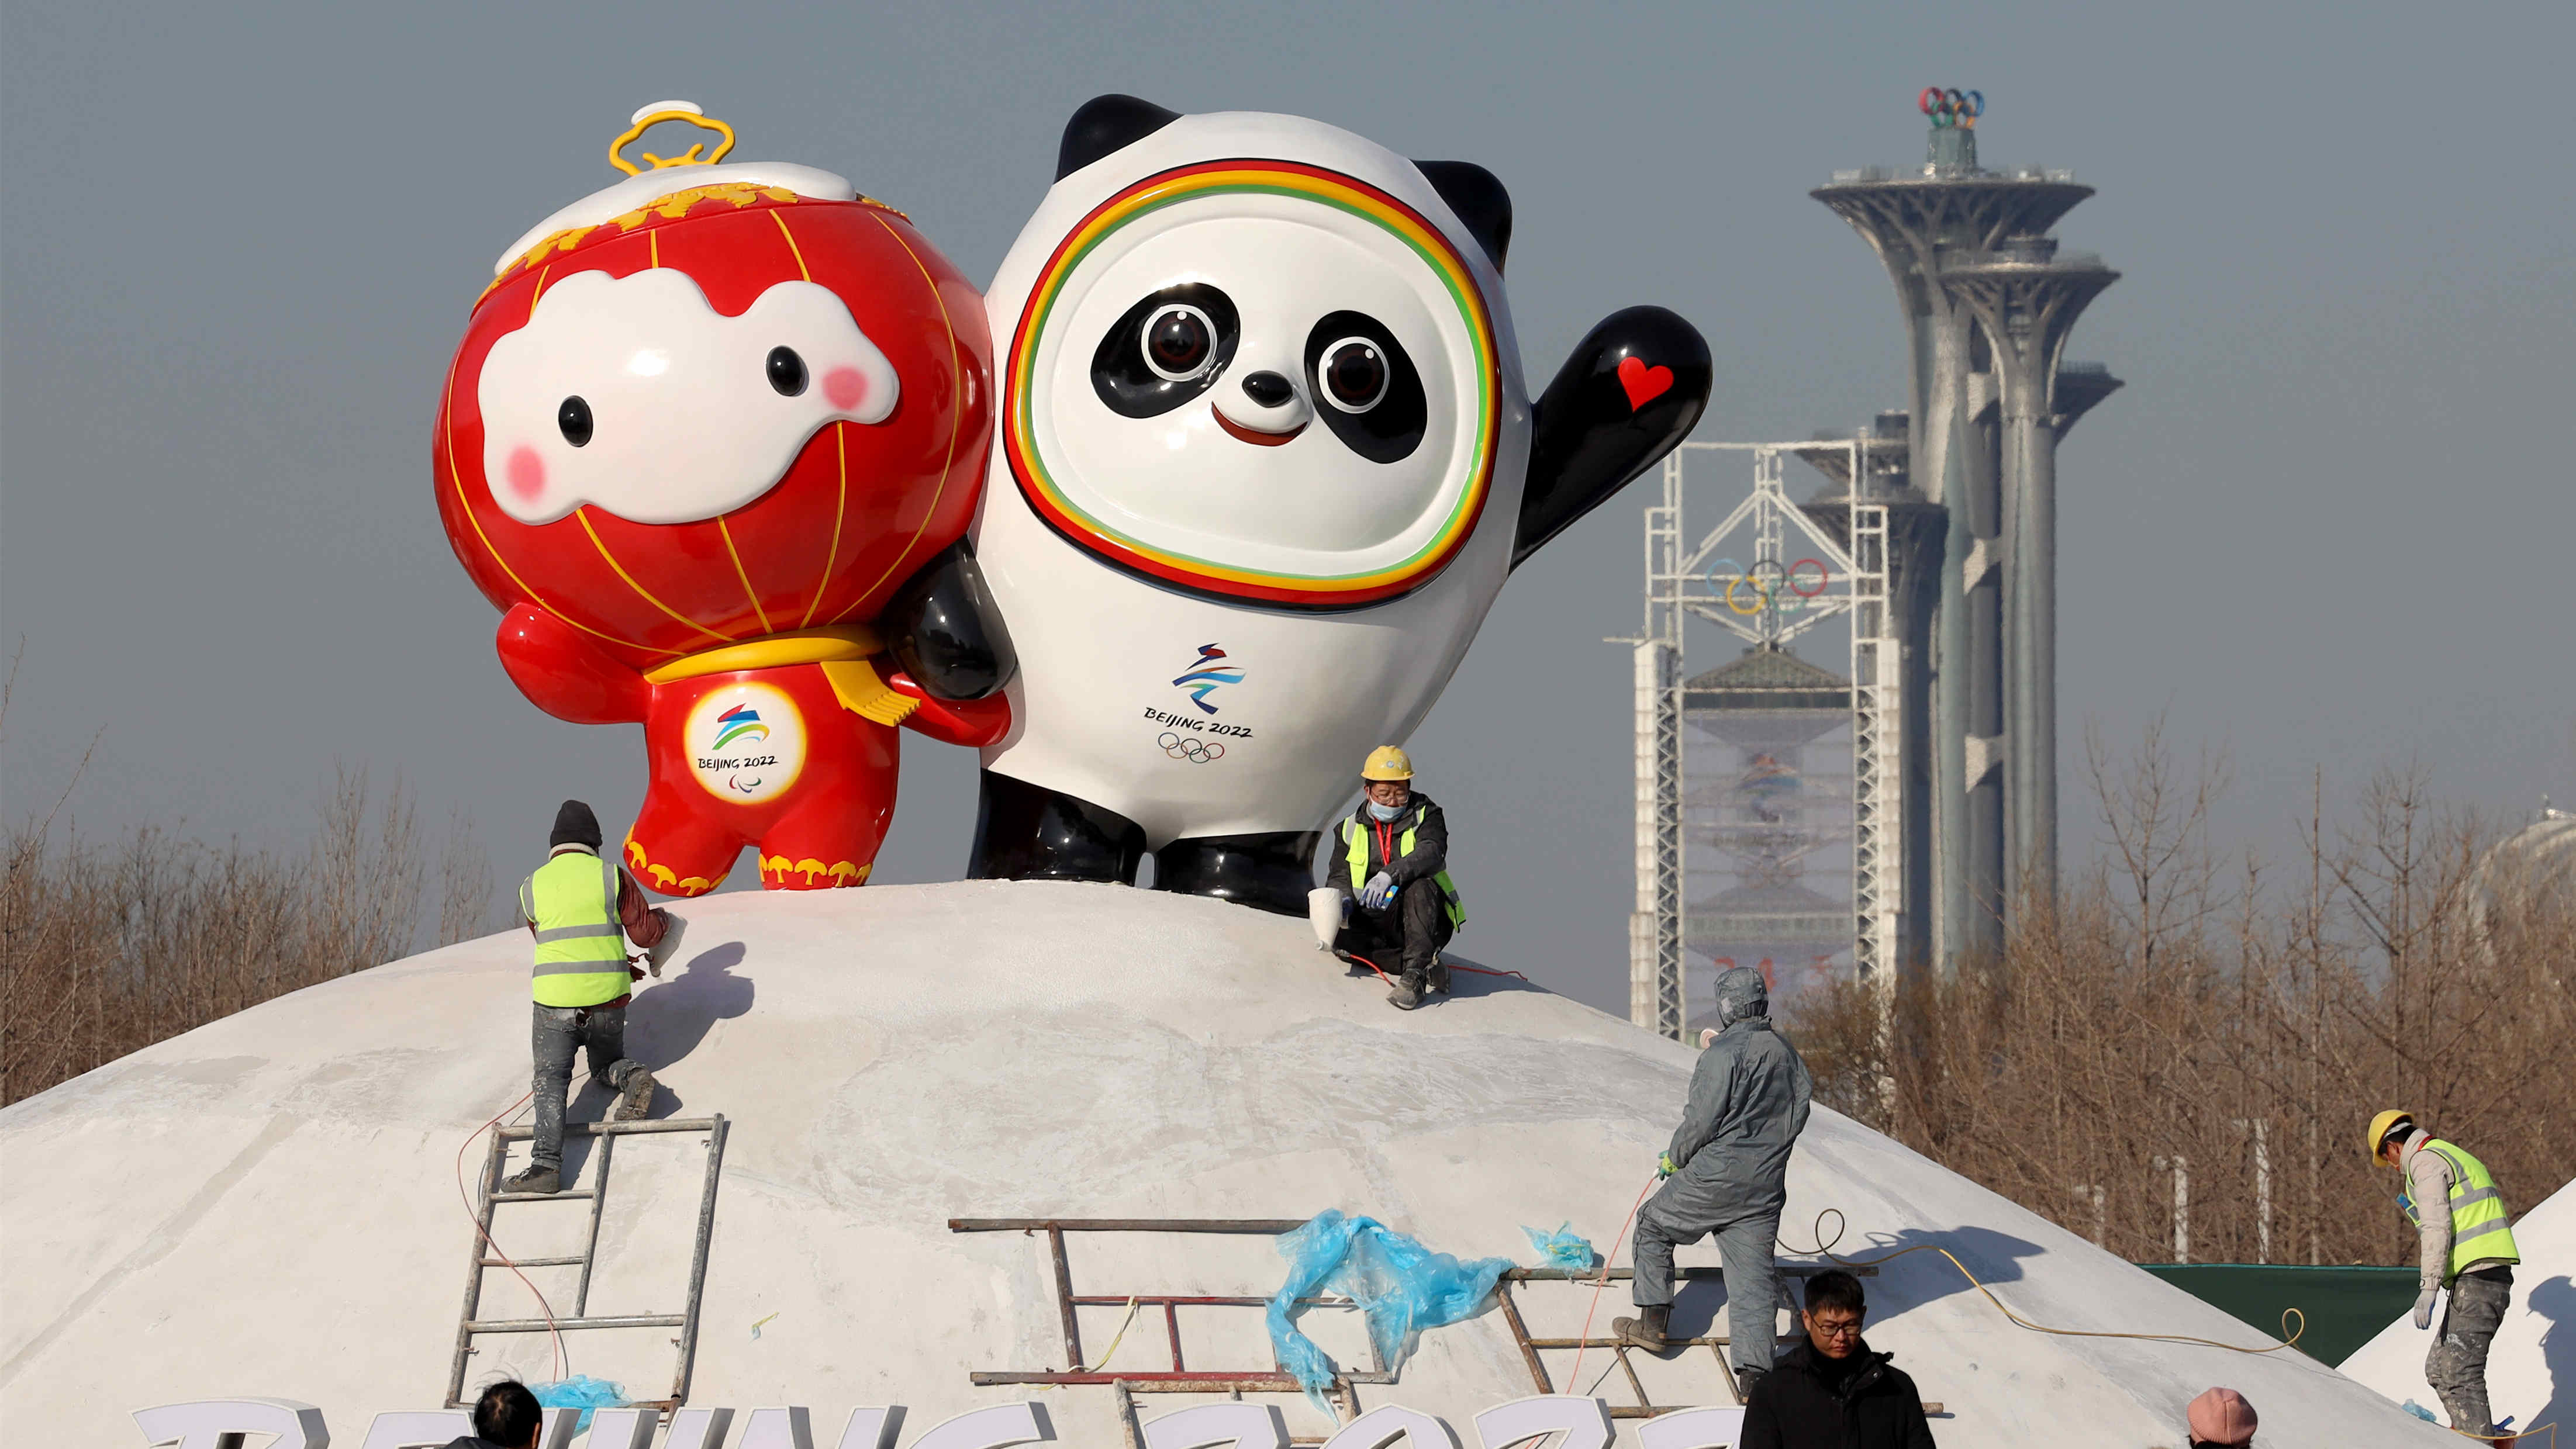 從「盼盼」到「冰墩墩」 大熊貓為什麼是世界公認的中國形象「代言人」？